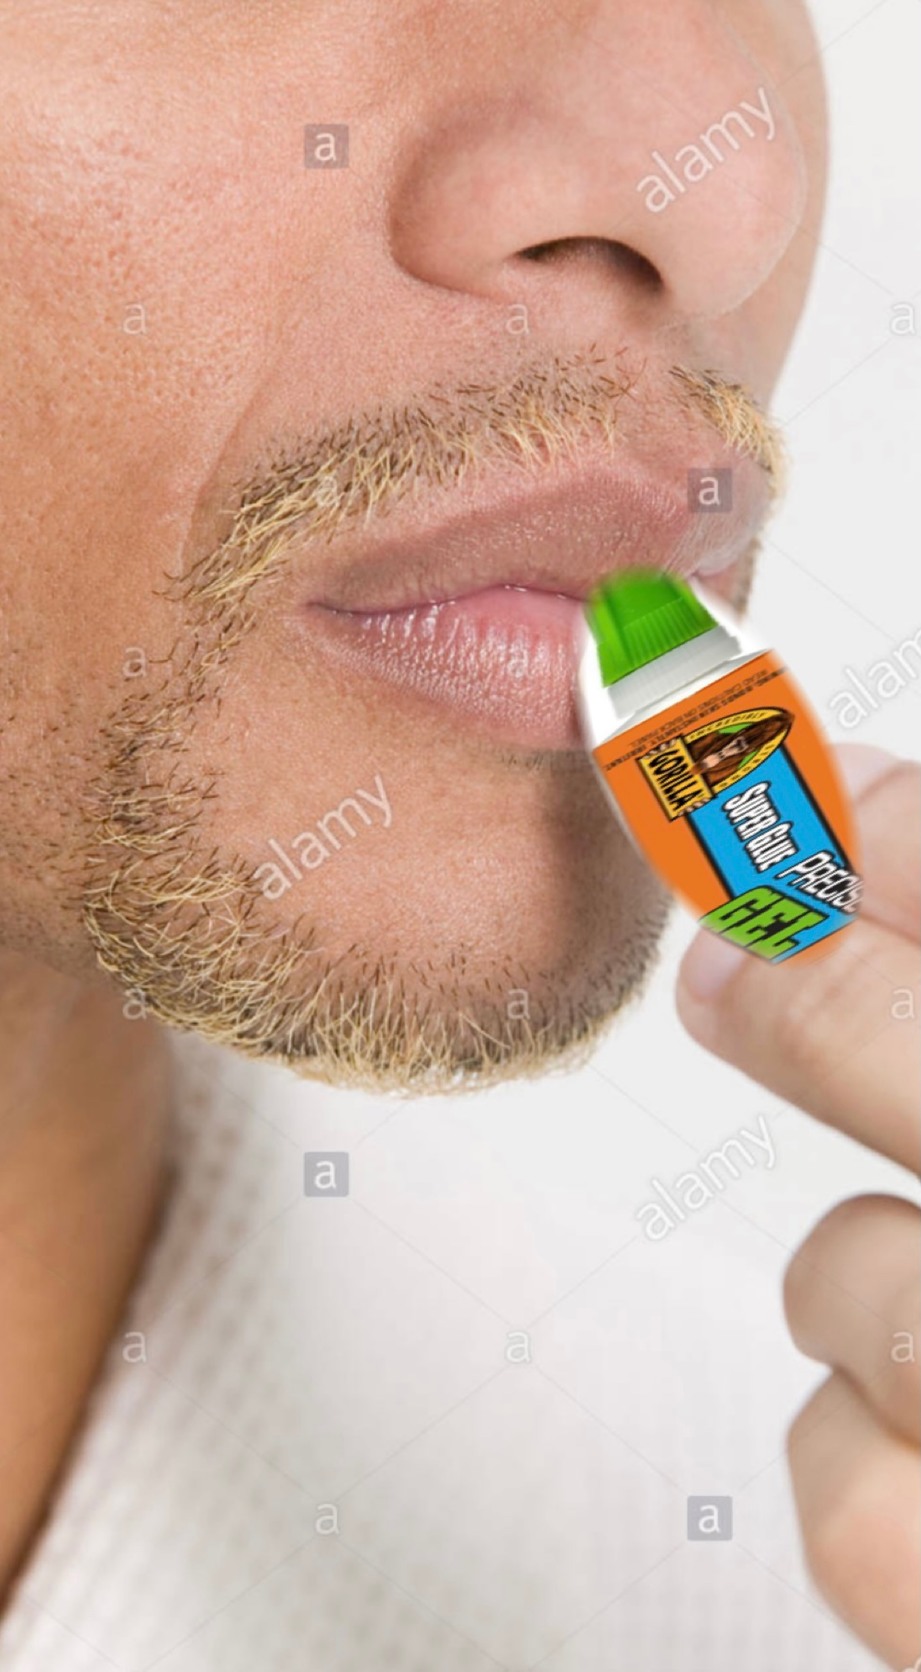 gorilla glue lip balm - meme